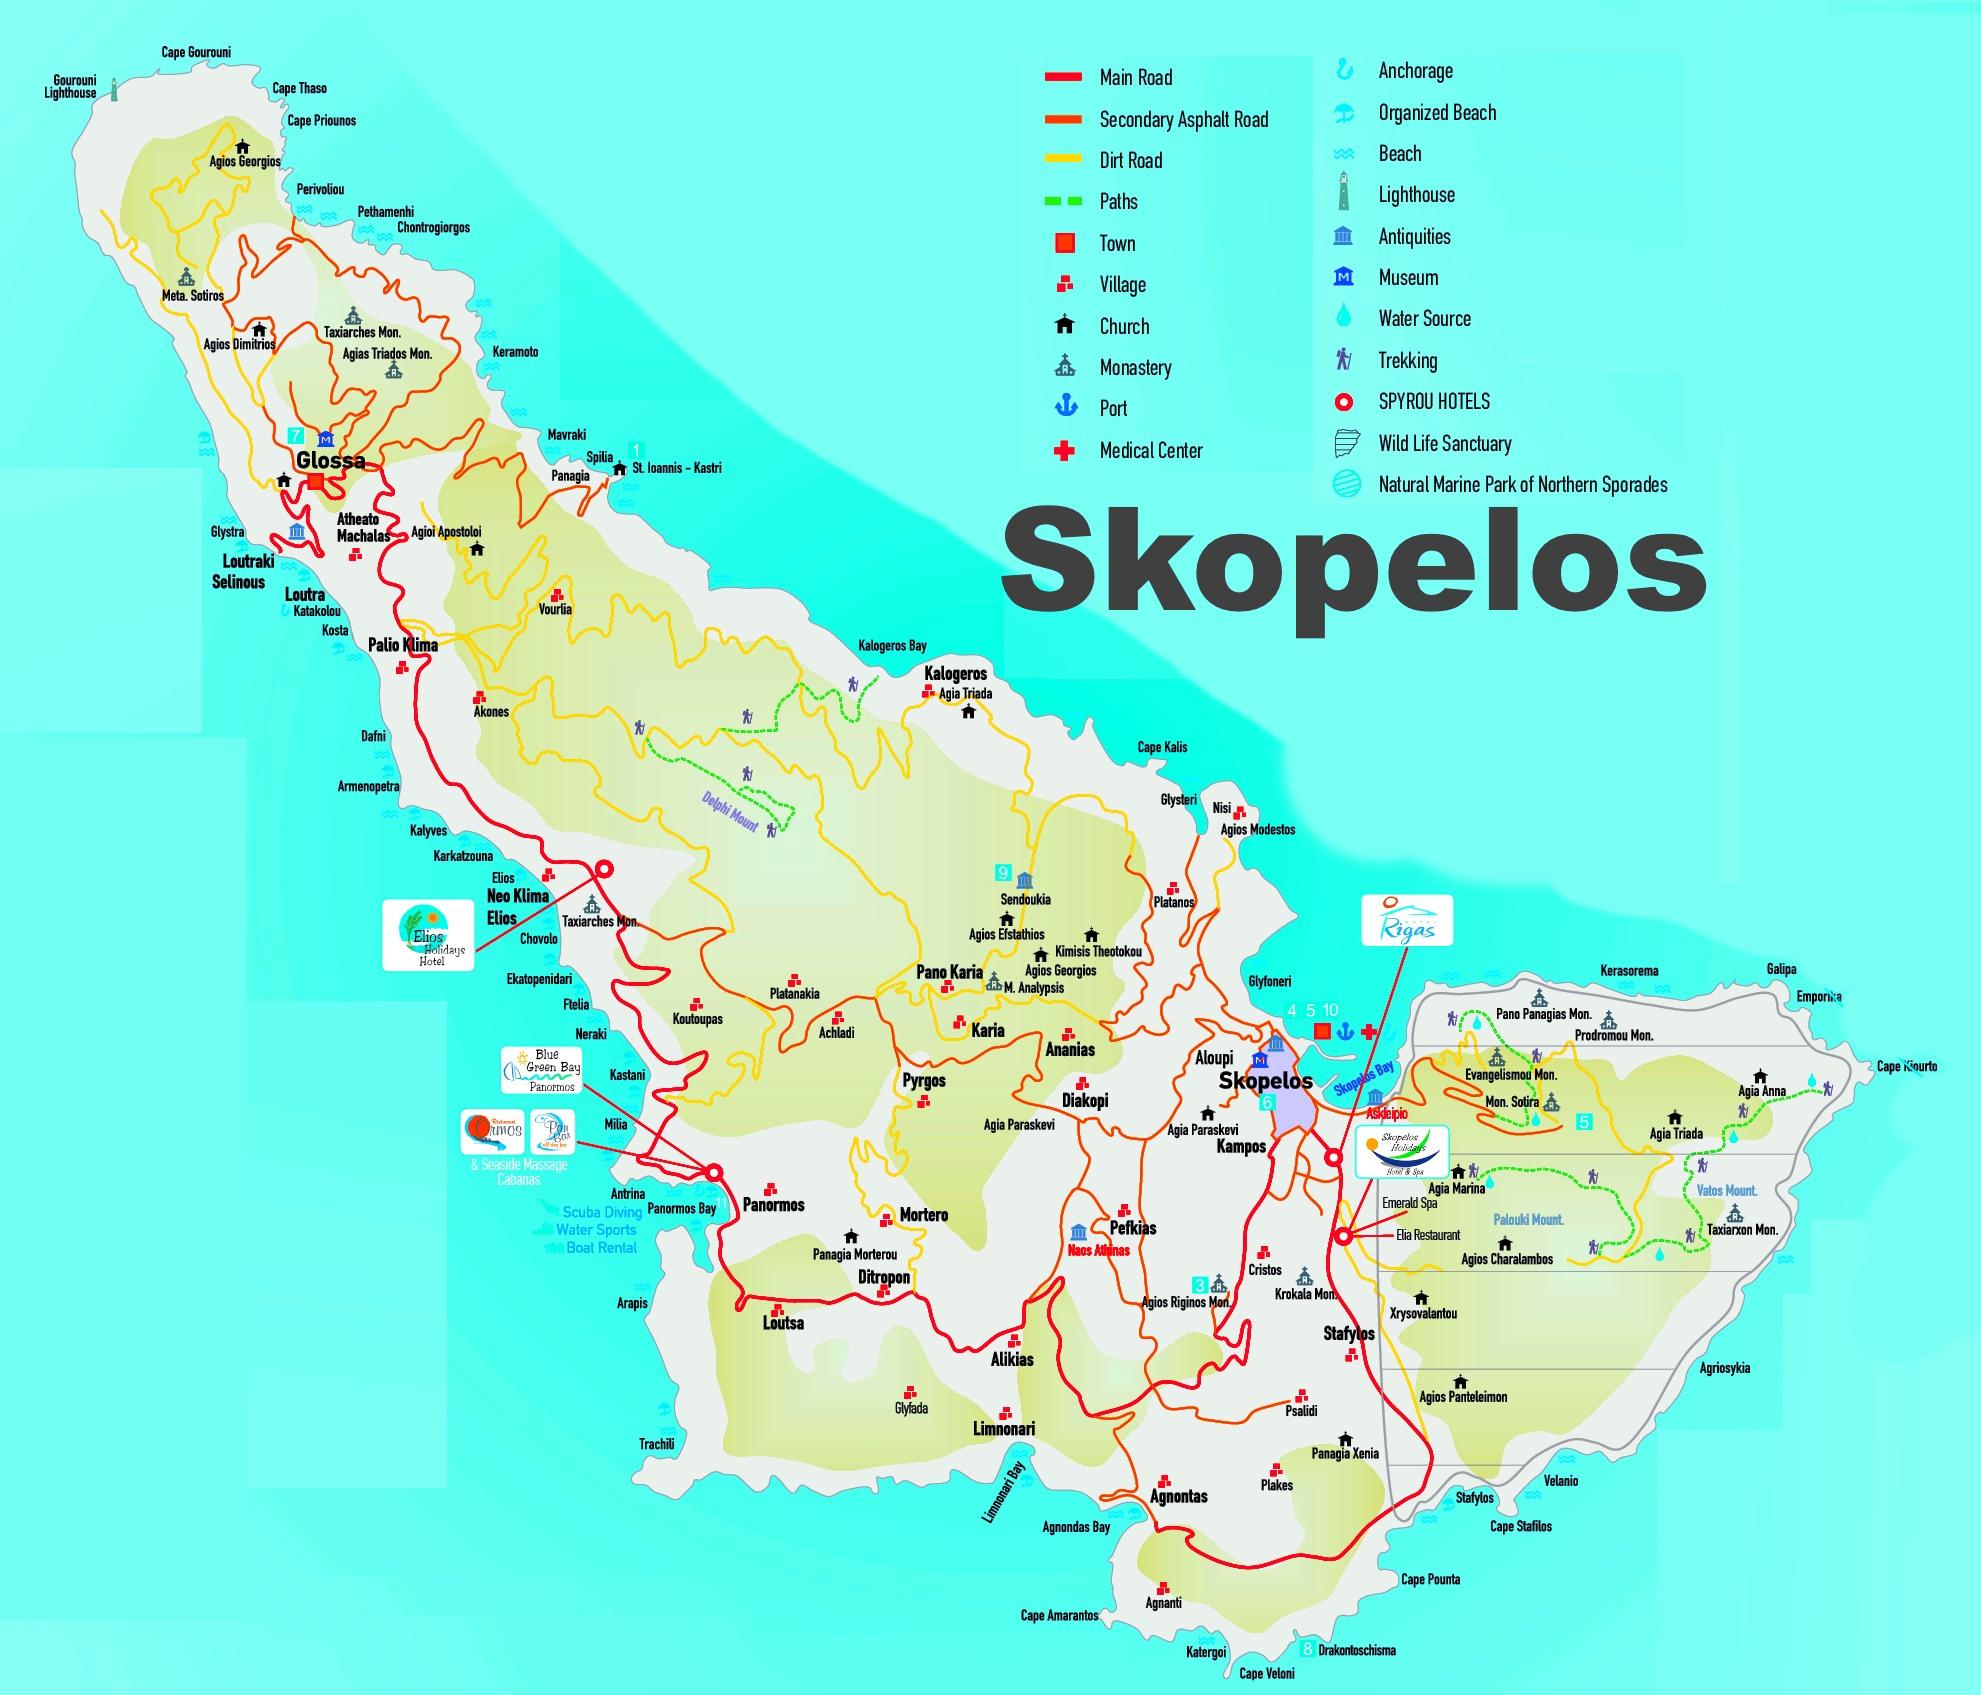 skopelos mapa Skopelos Řecko mapa   Skopelos mapa řeckých ostrovů (Jižní Evropa  skopelos mapa